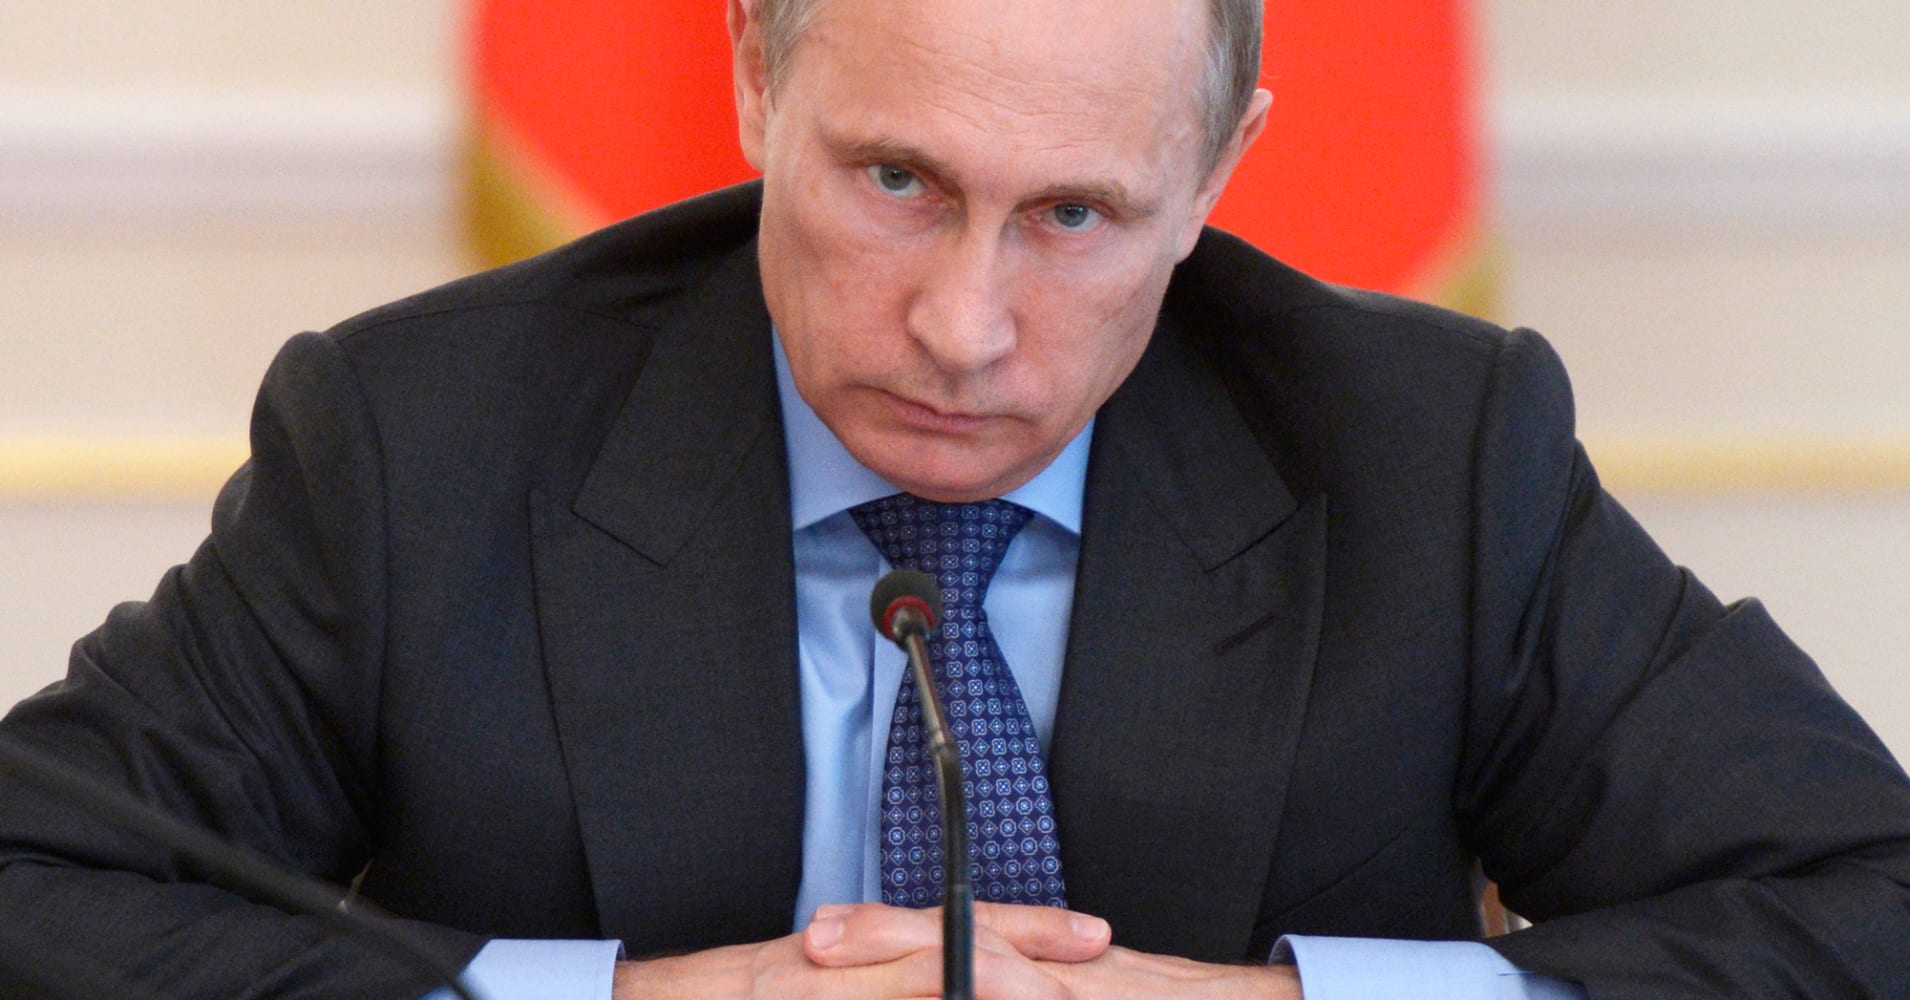 Защитить от списания по долгам минимальный доход граждан рекомендовал Владимир Путин - фото 1